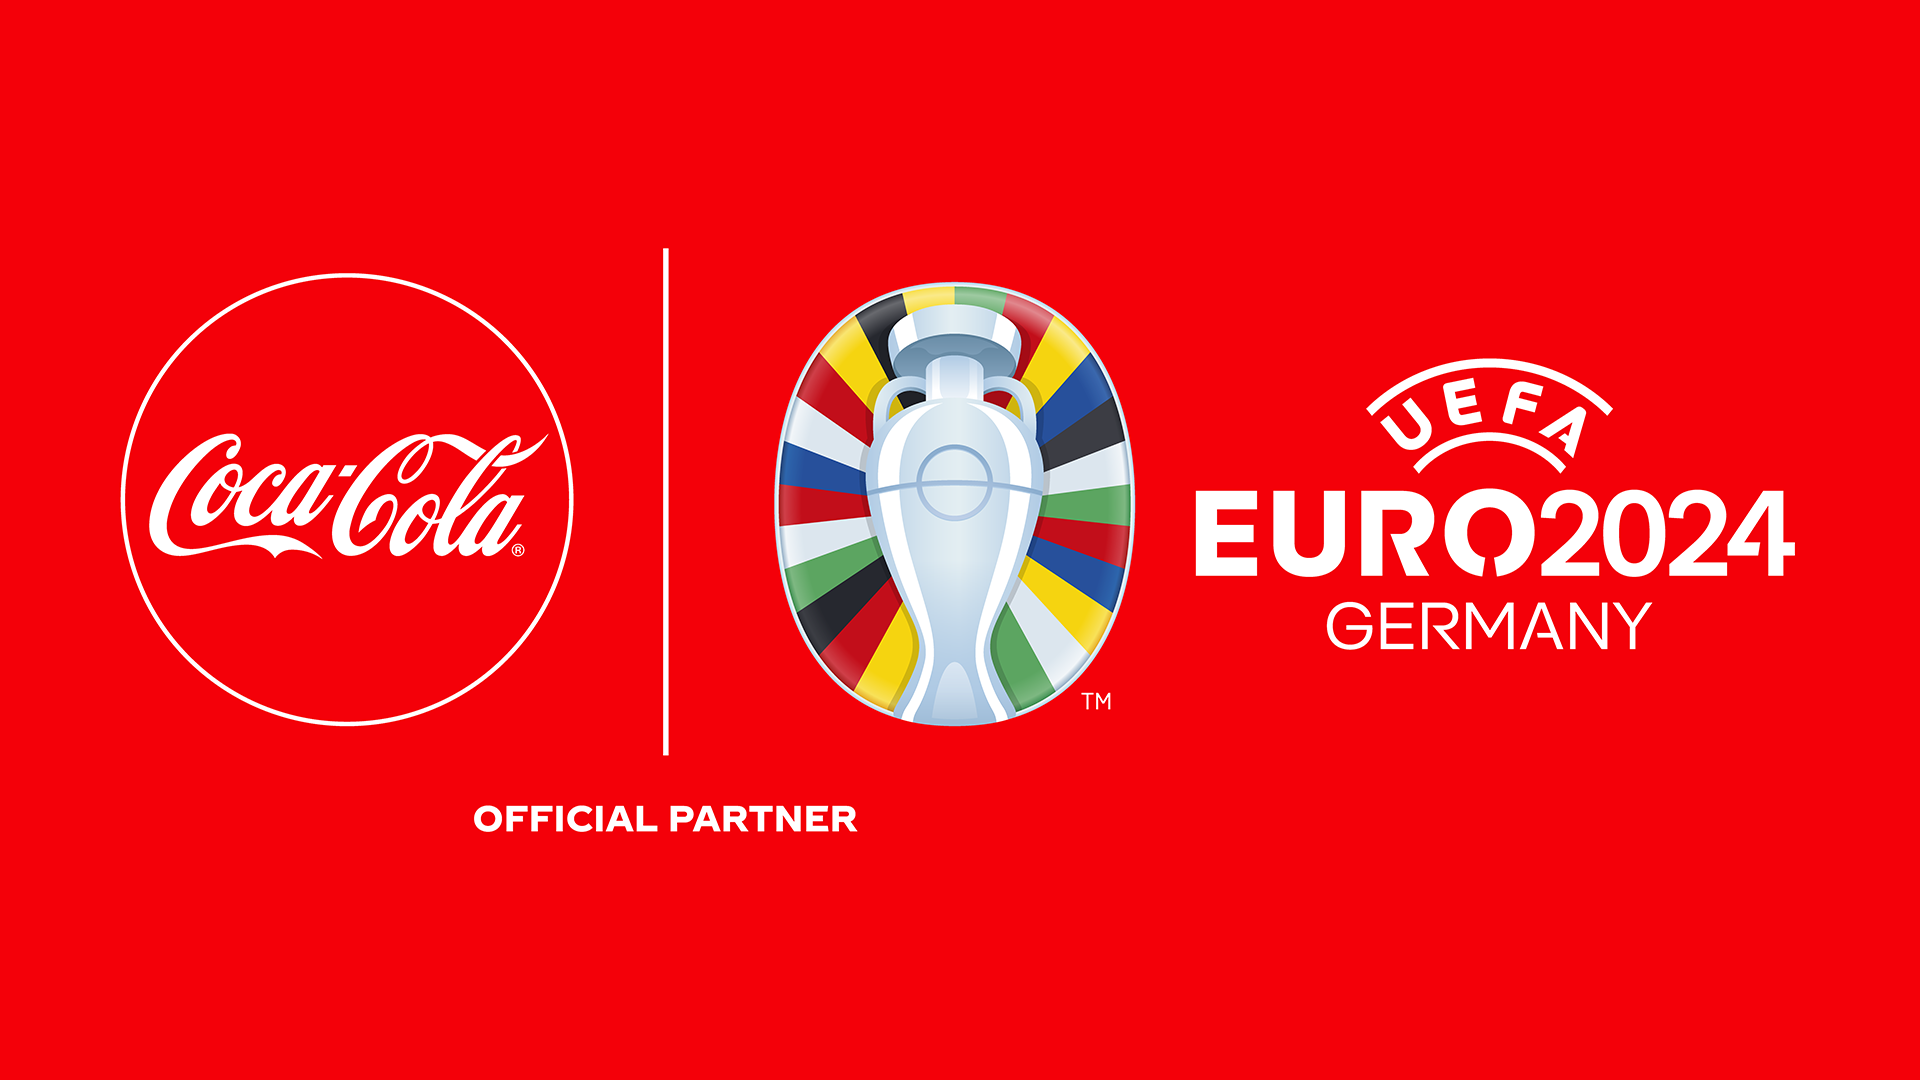 Coca-Cola ist Partner der UEFA EURO 2024™